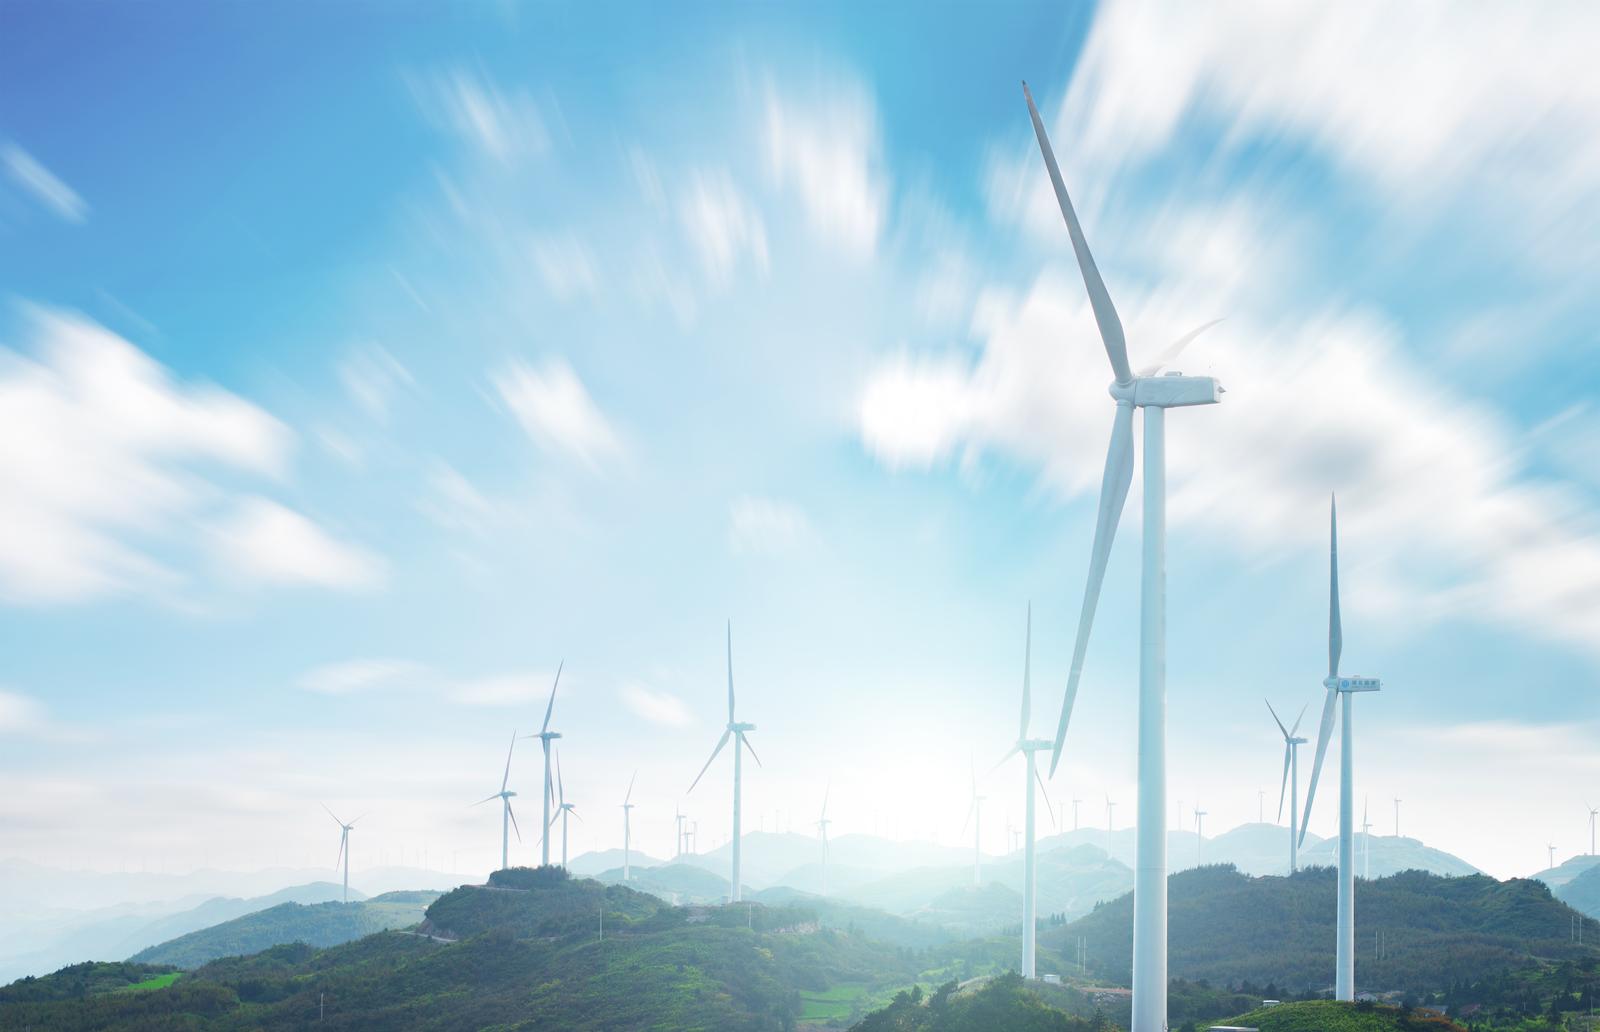 TUULEMOOTORITE SELTS MTÜ - Elektrienergia tootmine tuuleenergiast Nõo vallas